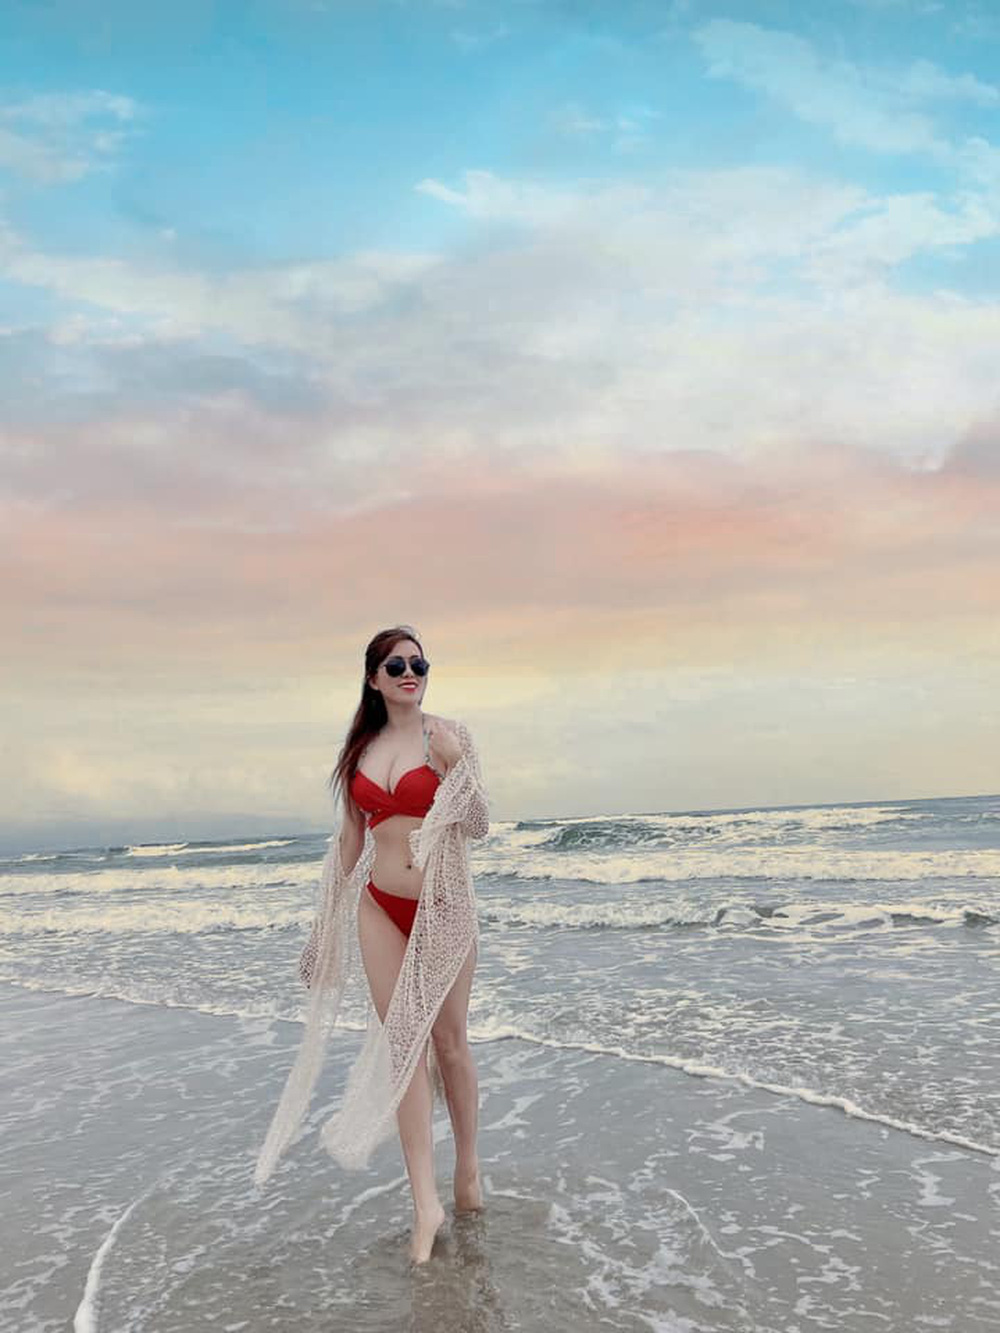 Hot girl Mai Thỏ khoe dáng đồng hồ cát nóng bỏng trong loạt ảnh diện bikini bên bãi biển - Ảnh 3